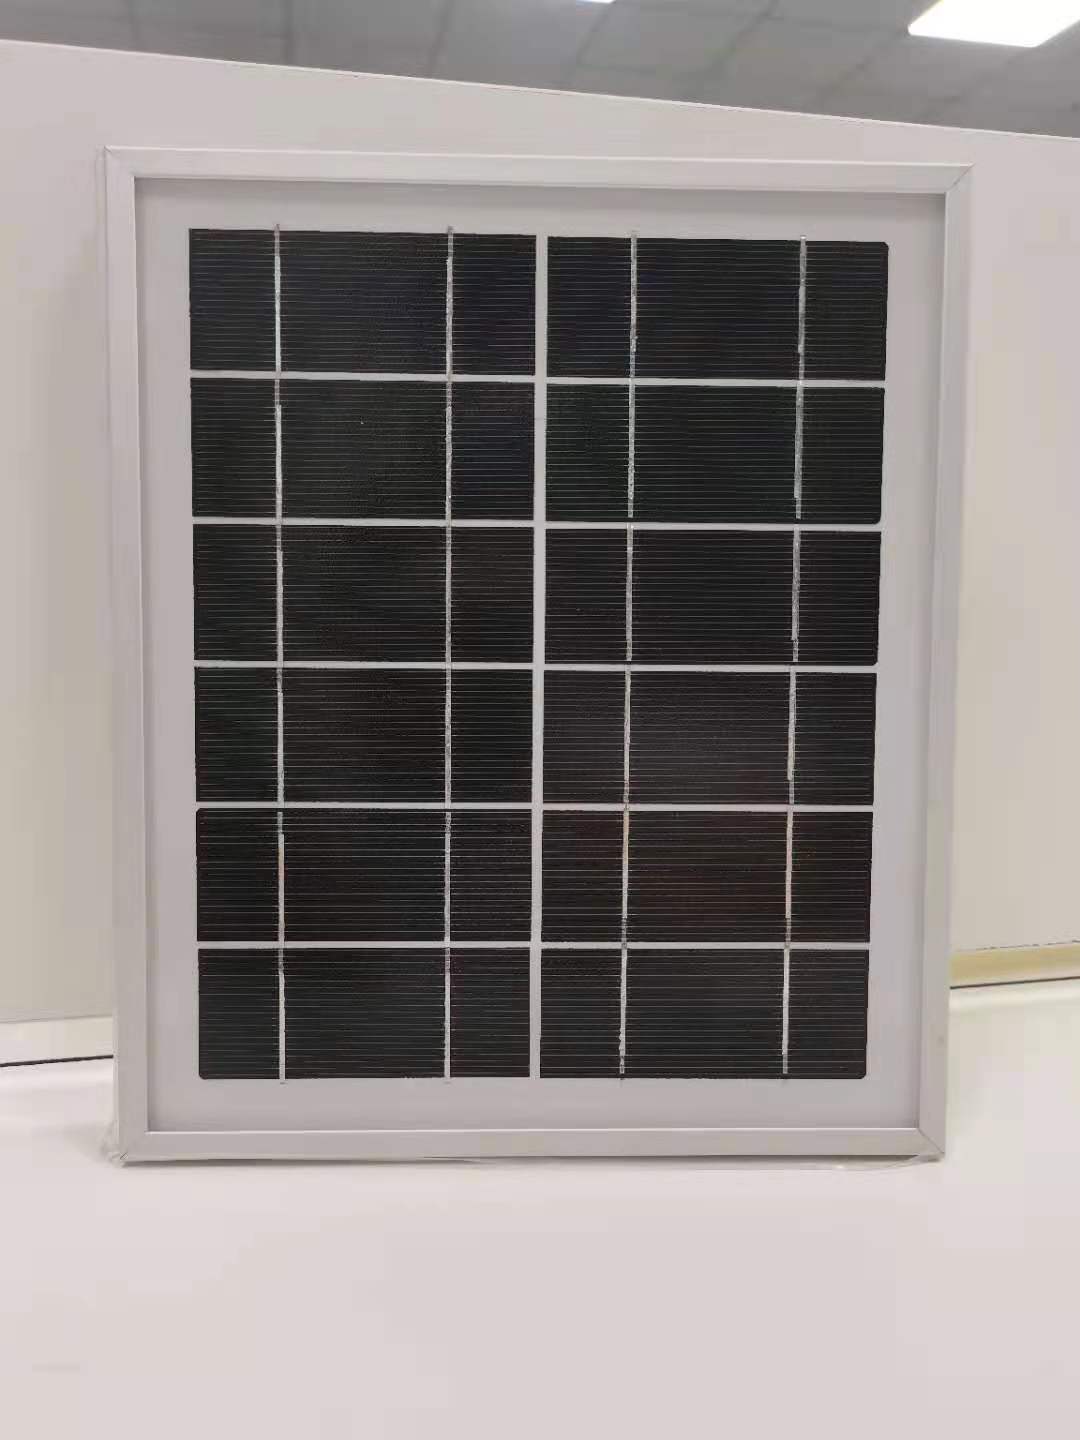 太阳能板 监控太阳能板 深圳太阳能板厂家 深圳市天成太阳能技术有限公司